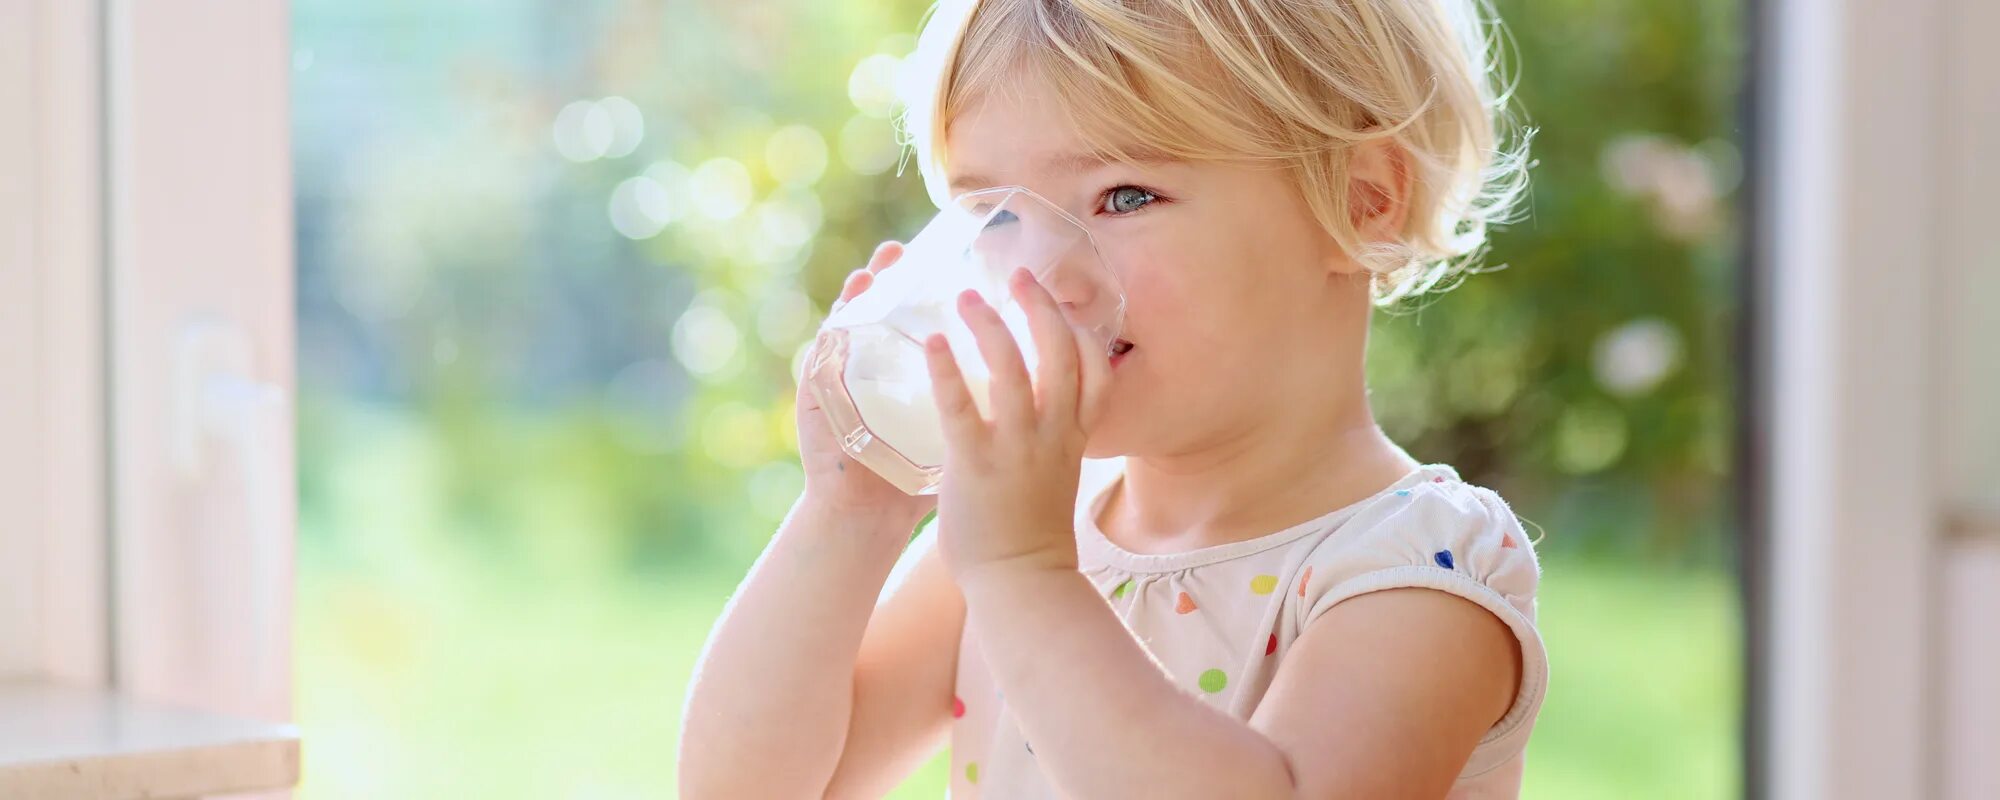 Пьет молоко на английском. Ребенок пьет молоко. Счастливые дети с молоком. Дети пьют молоко в садике. Пьет молоко из банки.